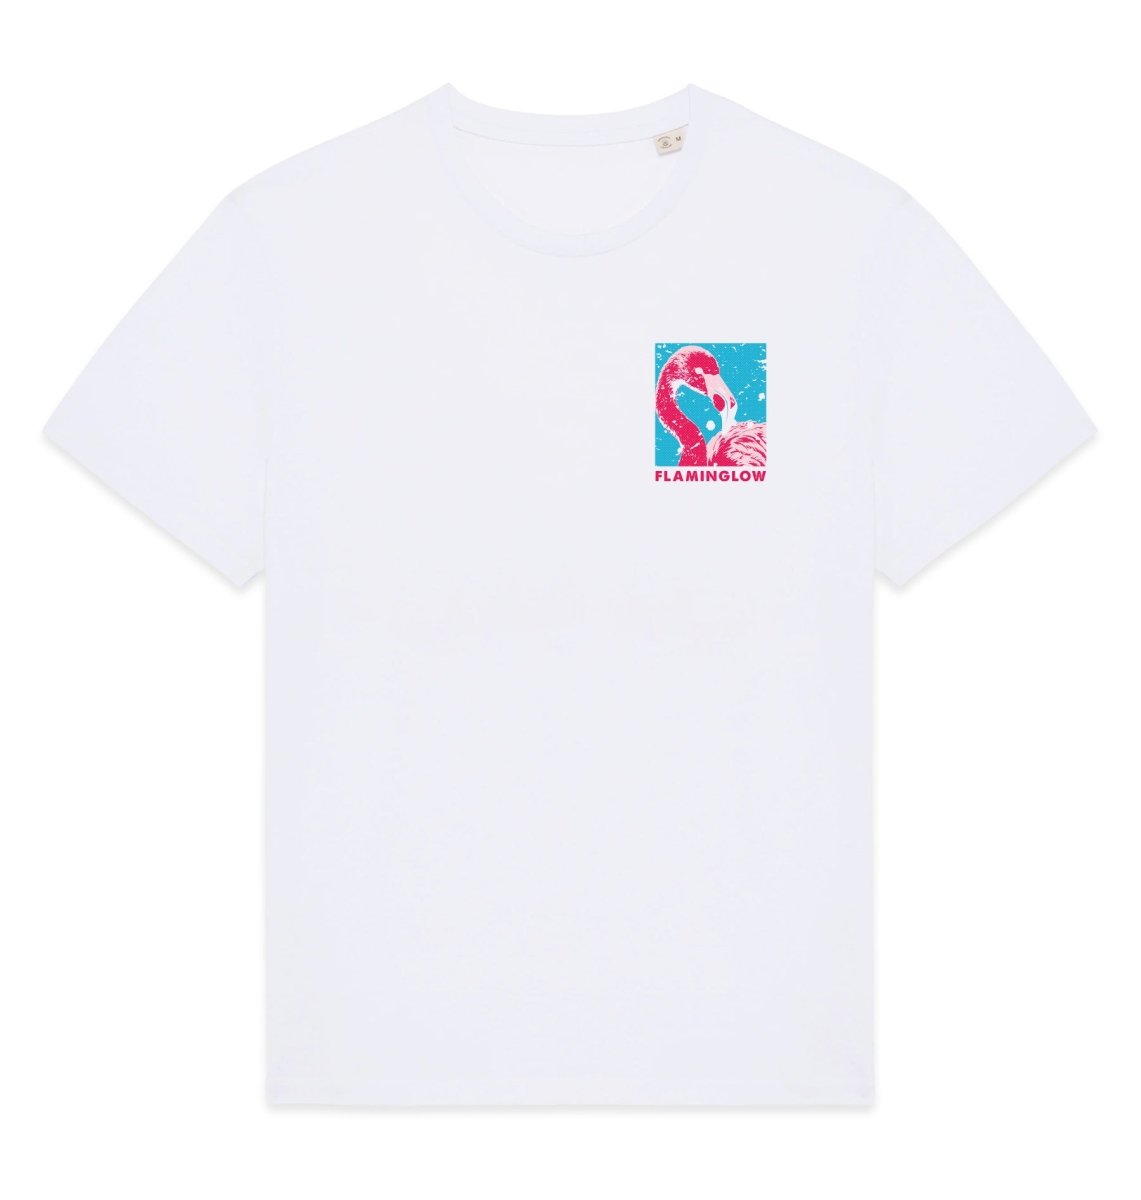 Flaminglow Graphic Womens T-shirt - Blue Panda